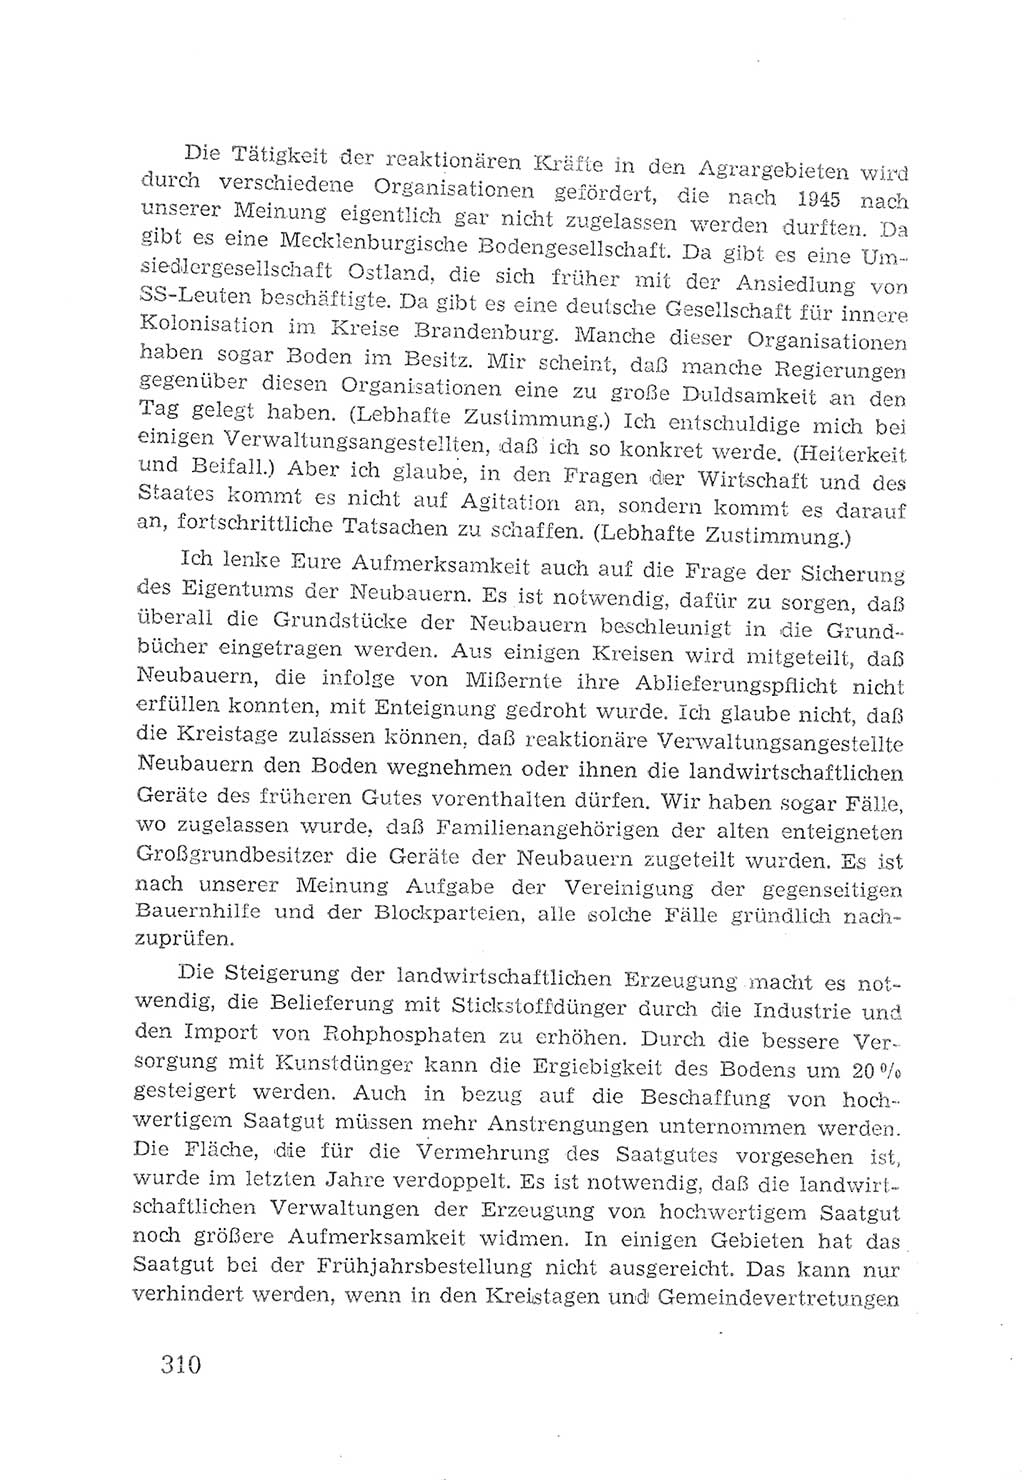 Protokoll der Verhandlungen des 2. Parteitages der Sozialistischen Einheitspartei Deutschlands (SED) [Sowjetische Besatzungszone (SBZ) Deutschlands] 1947, Seite 310 (Prot. Verh. 2. PT SED SBZ Dtl. 1947, S. 310)